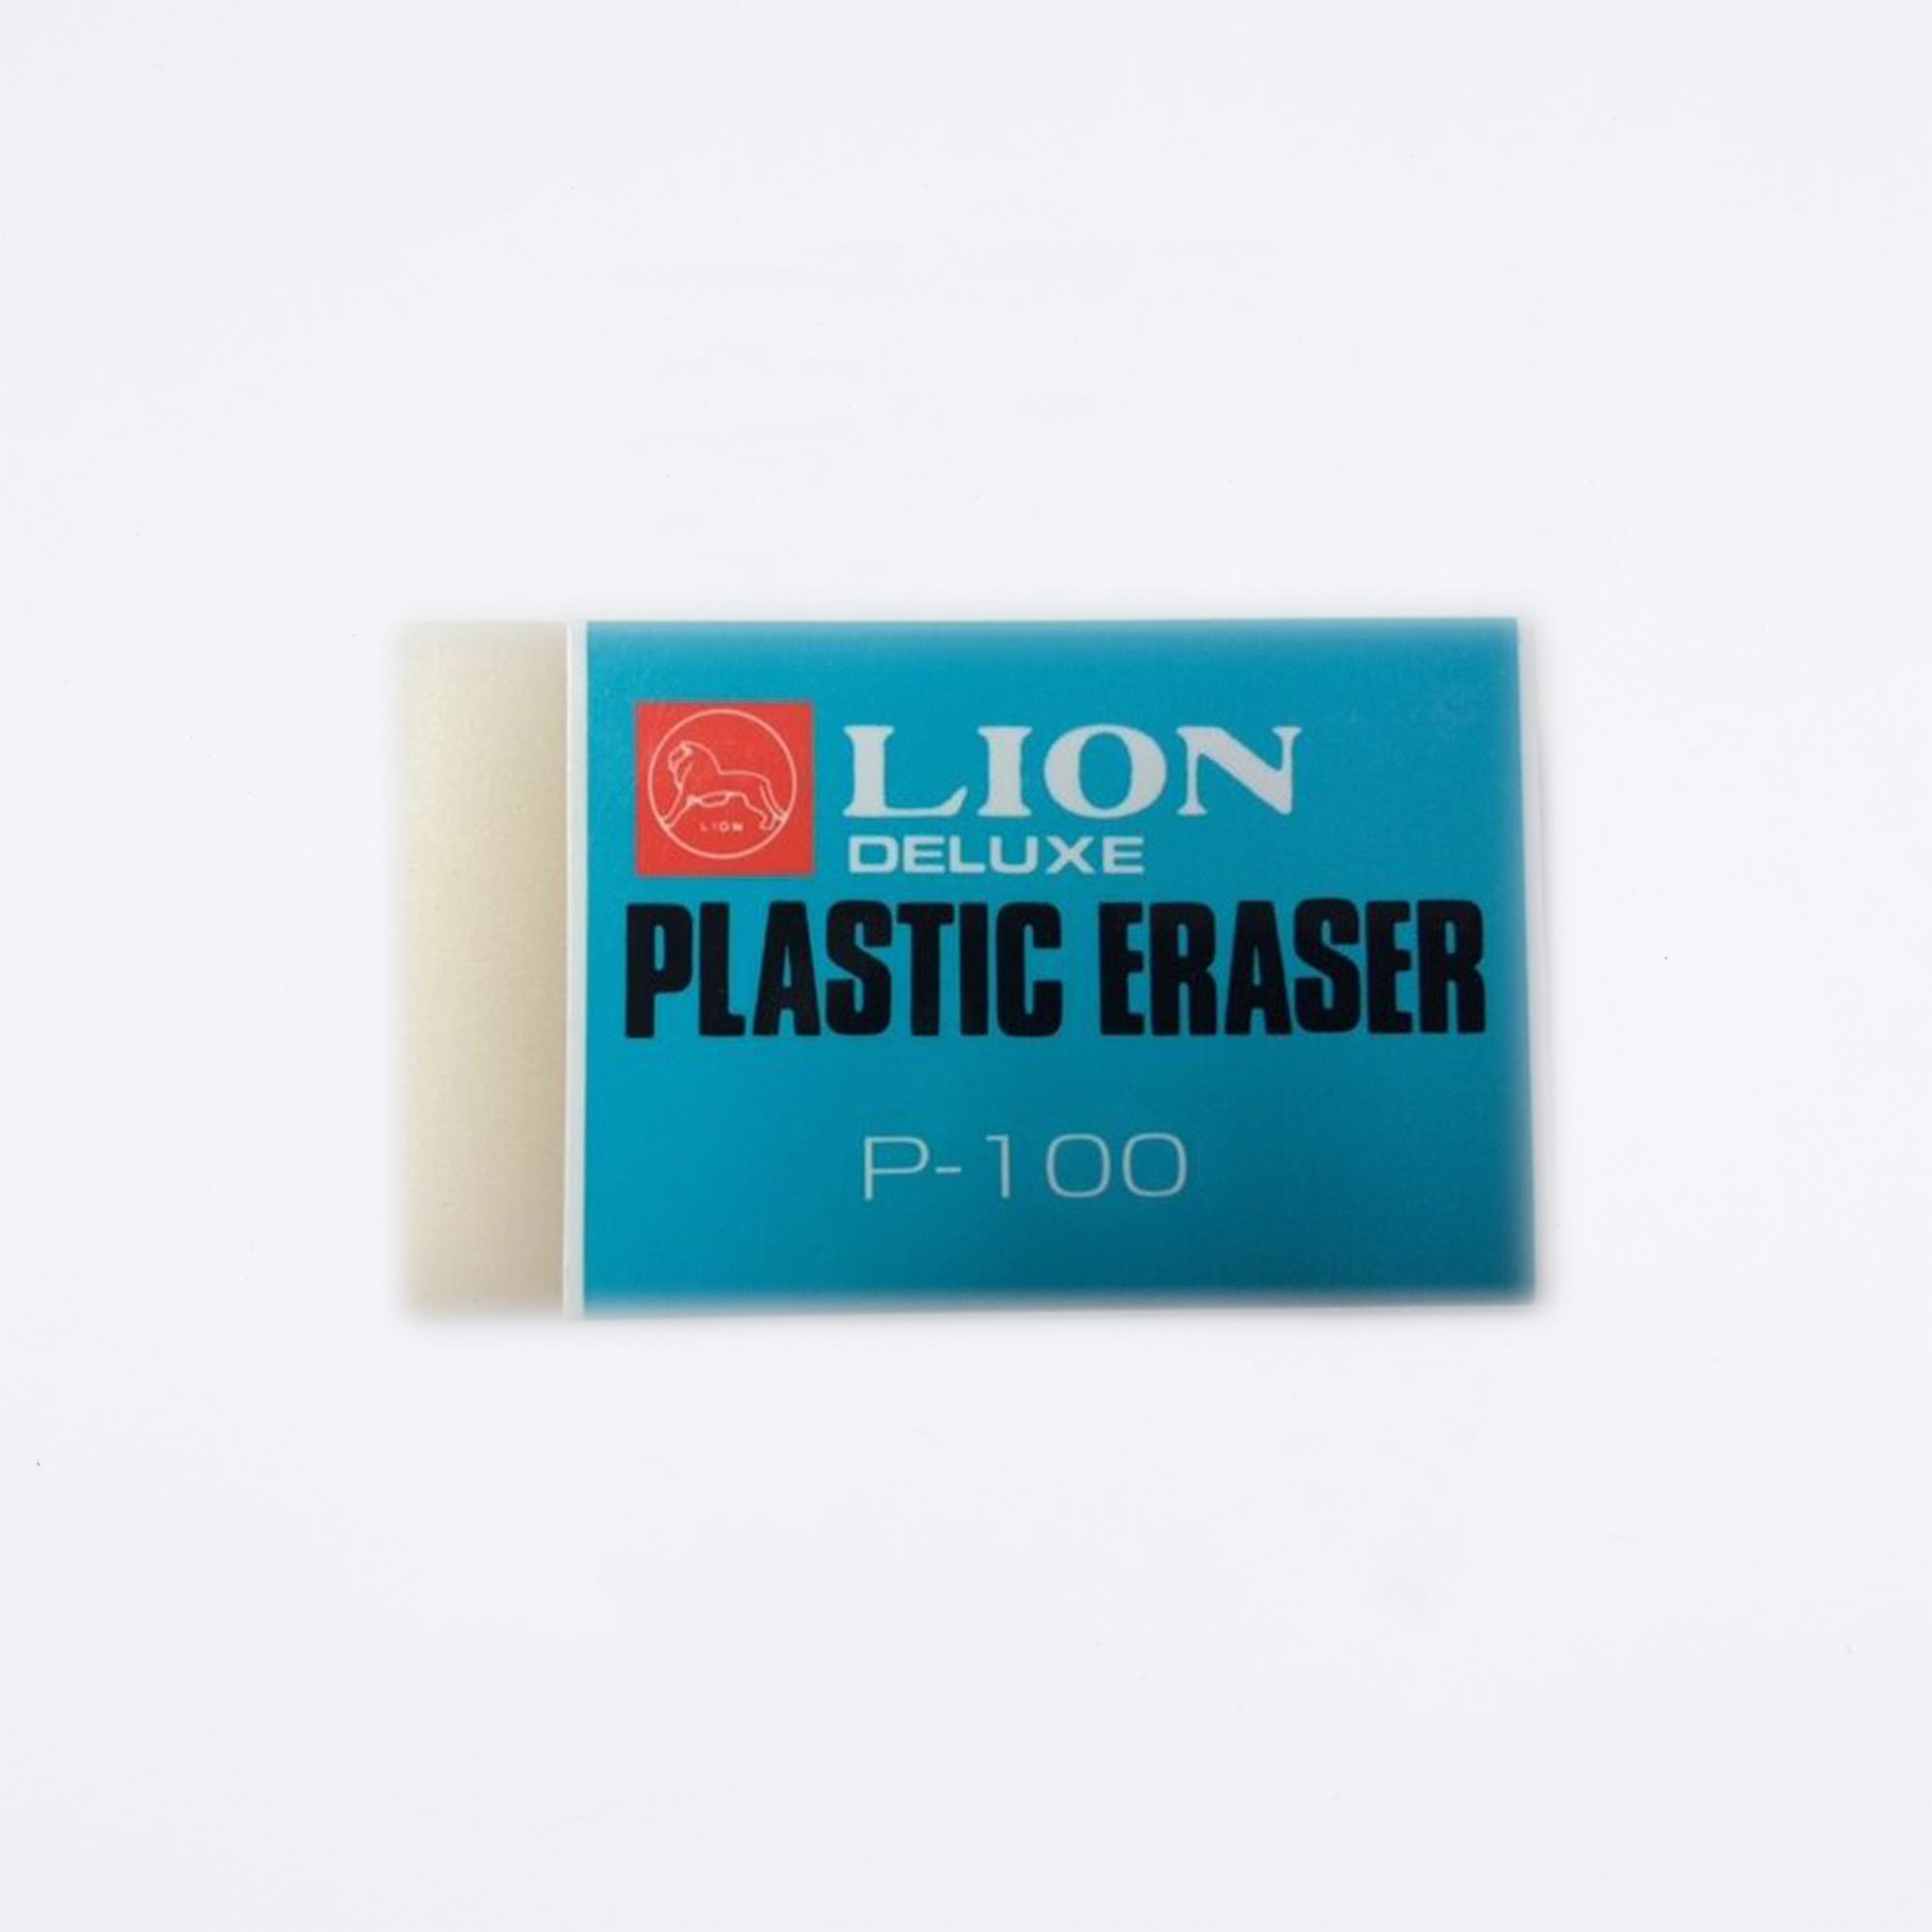 Lion P-100 Plastic Eraser